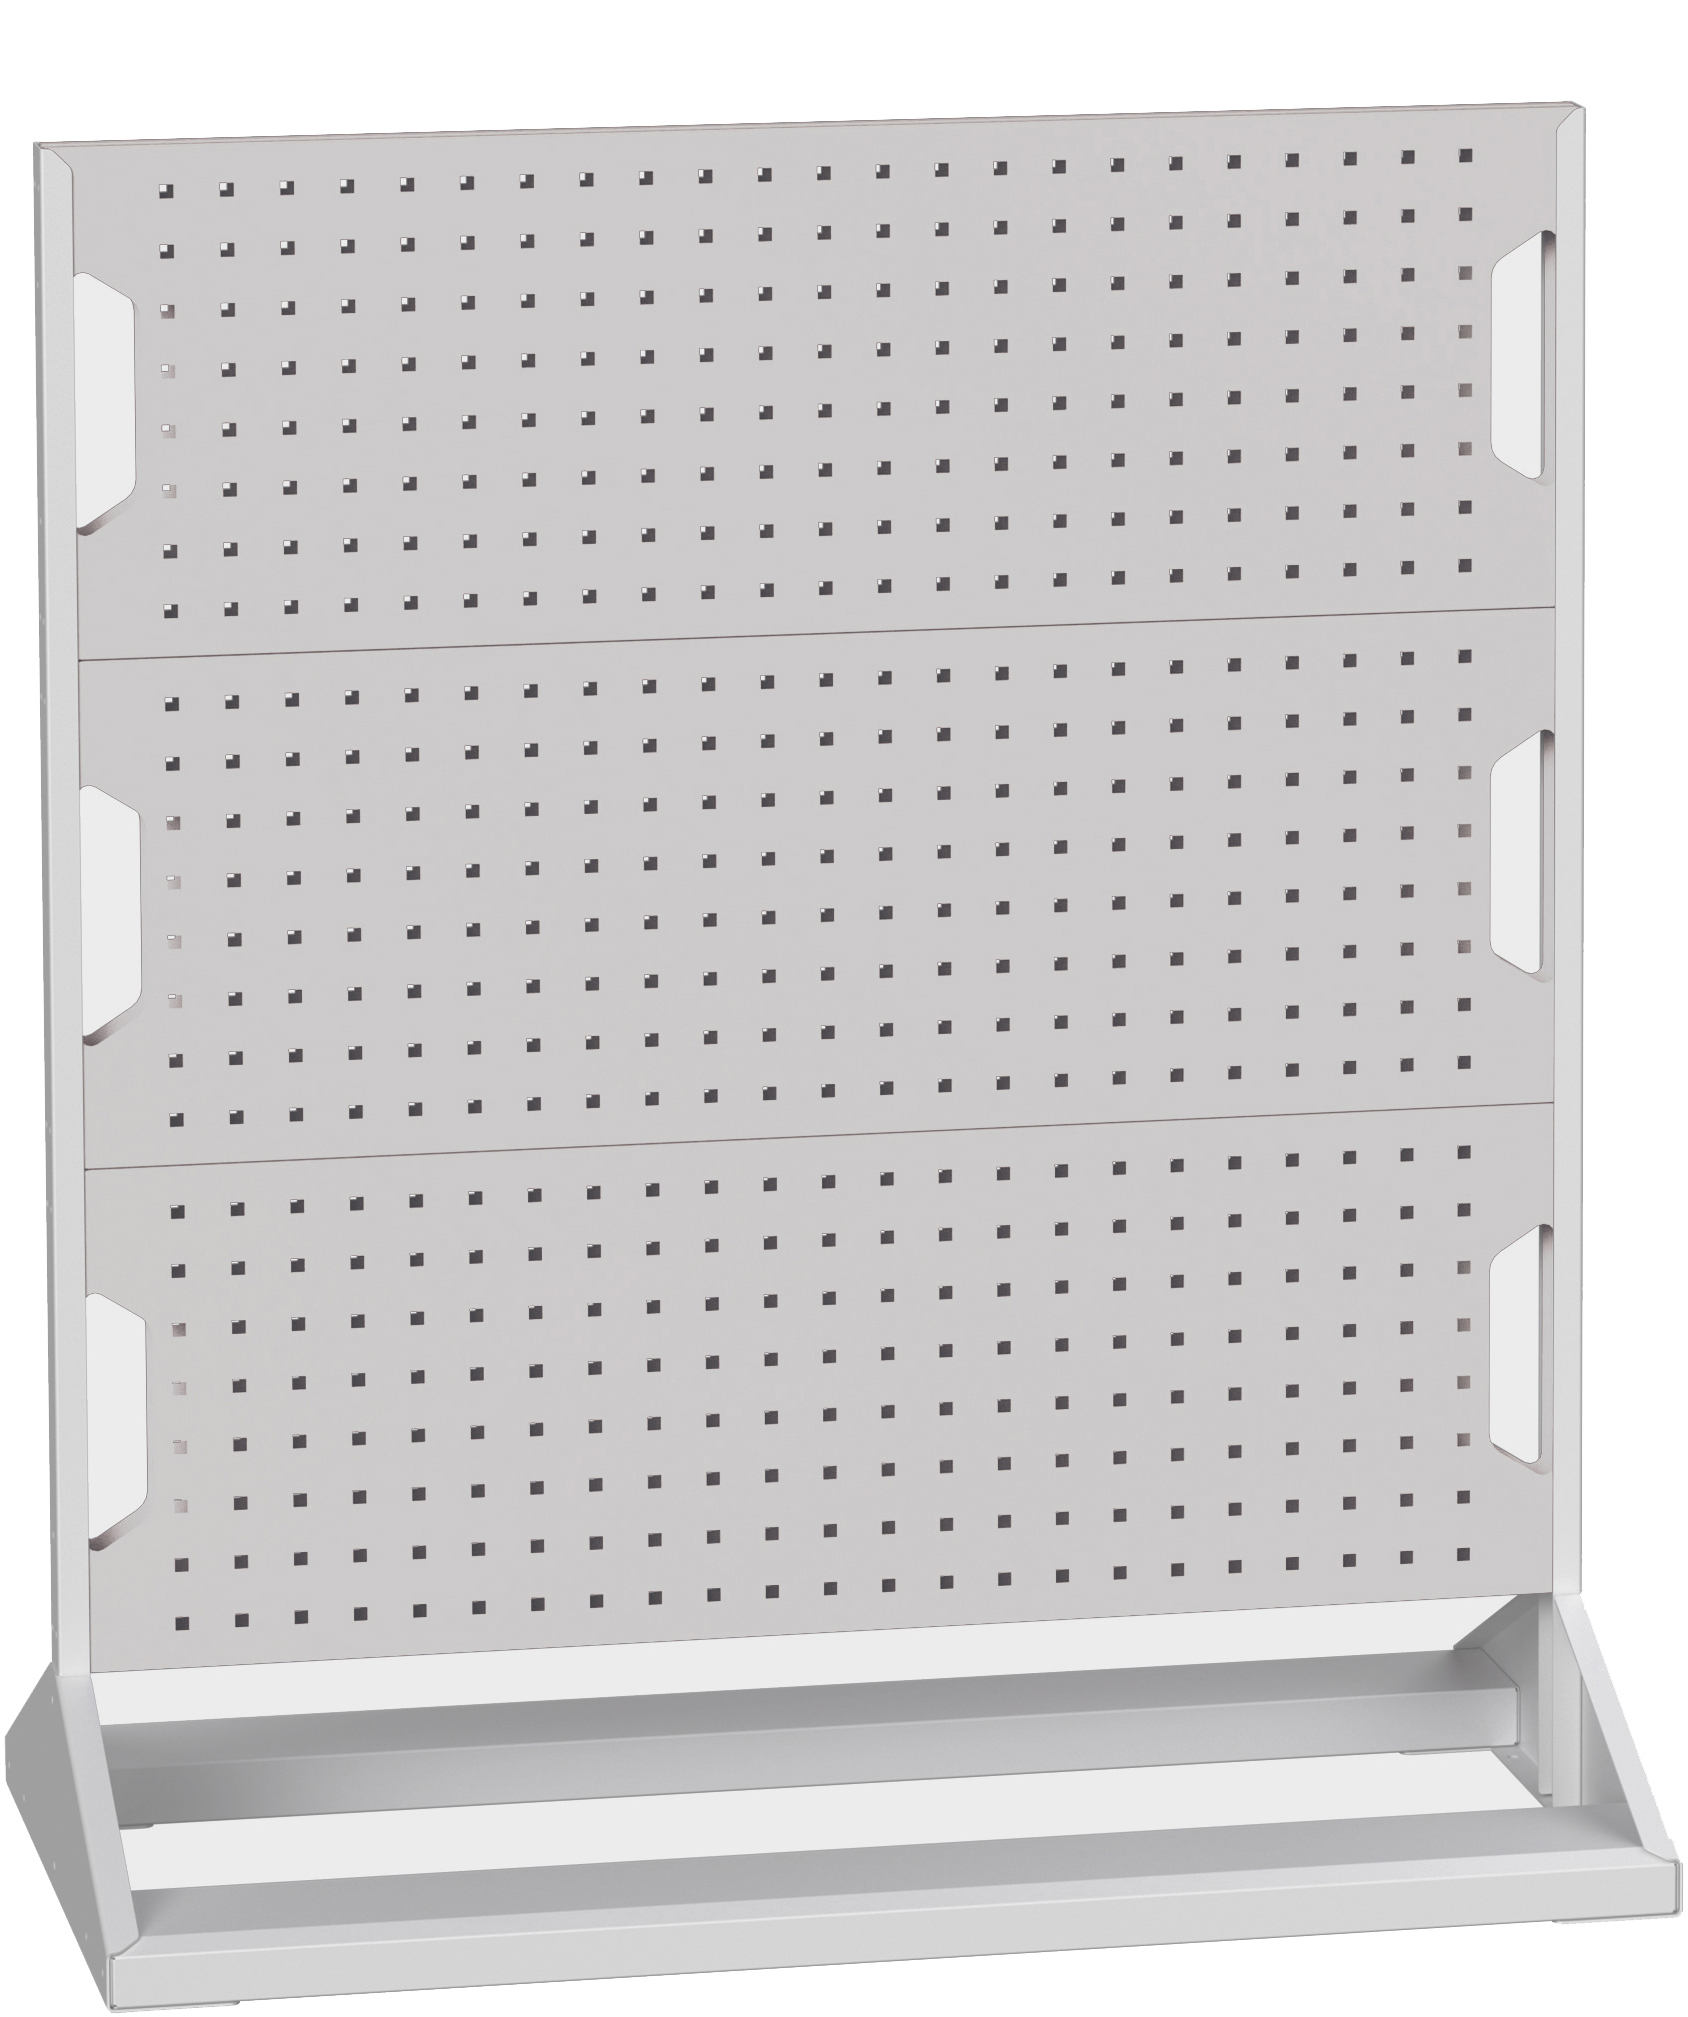 Bott Perfo Panel Rack (Double Sided) - 16917100.16V